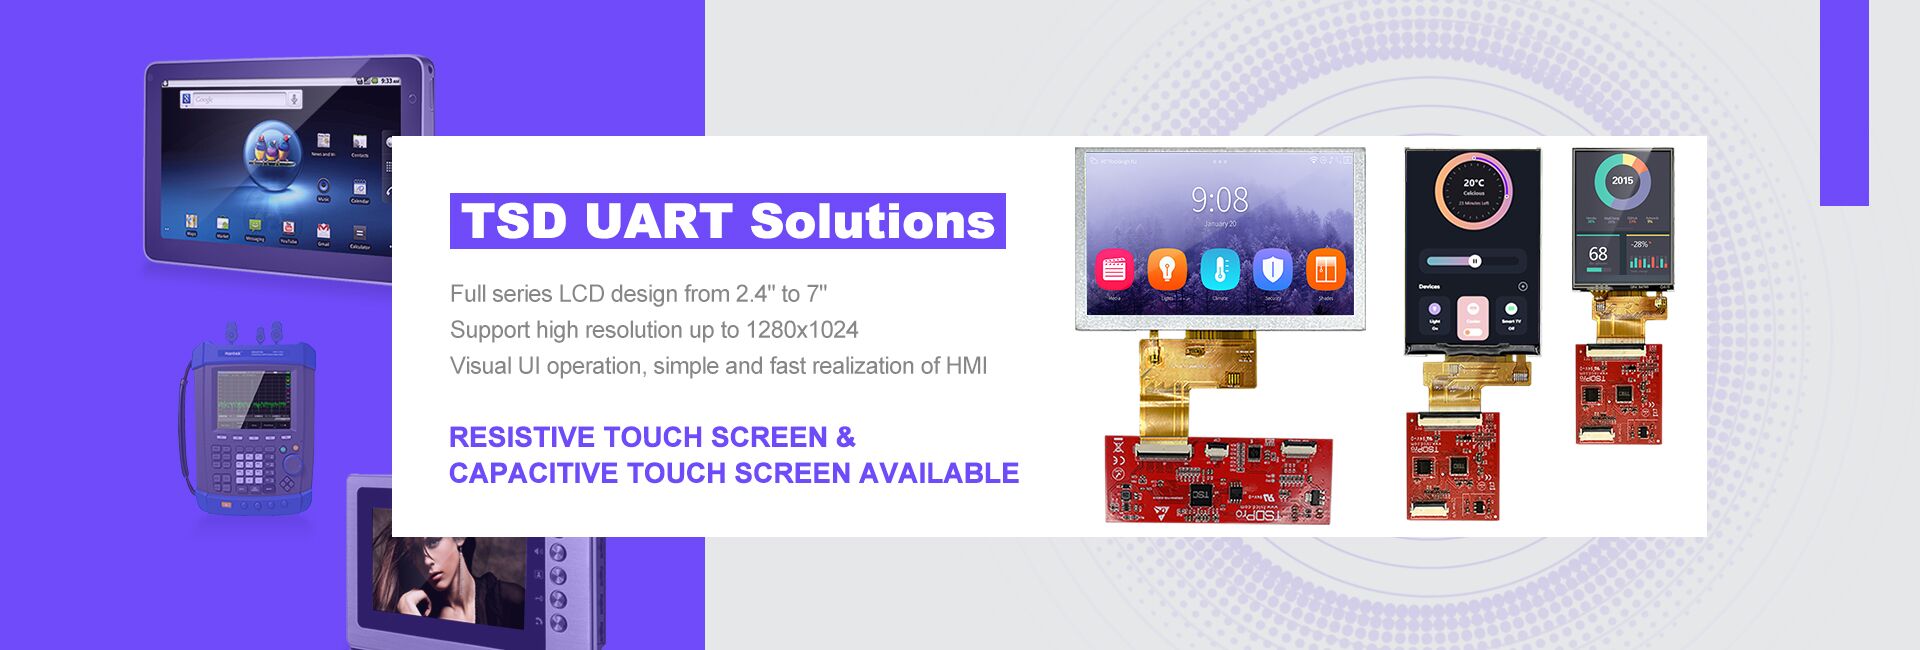 TSD Pro UART LCD-Display-Lösung kommt jetzt!
